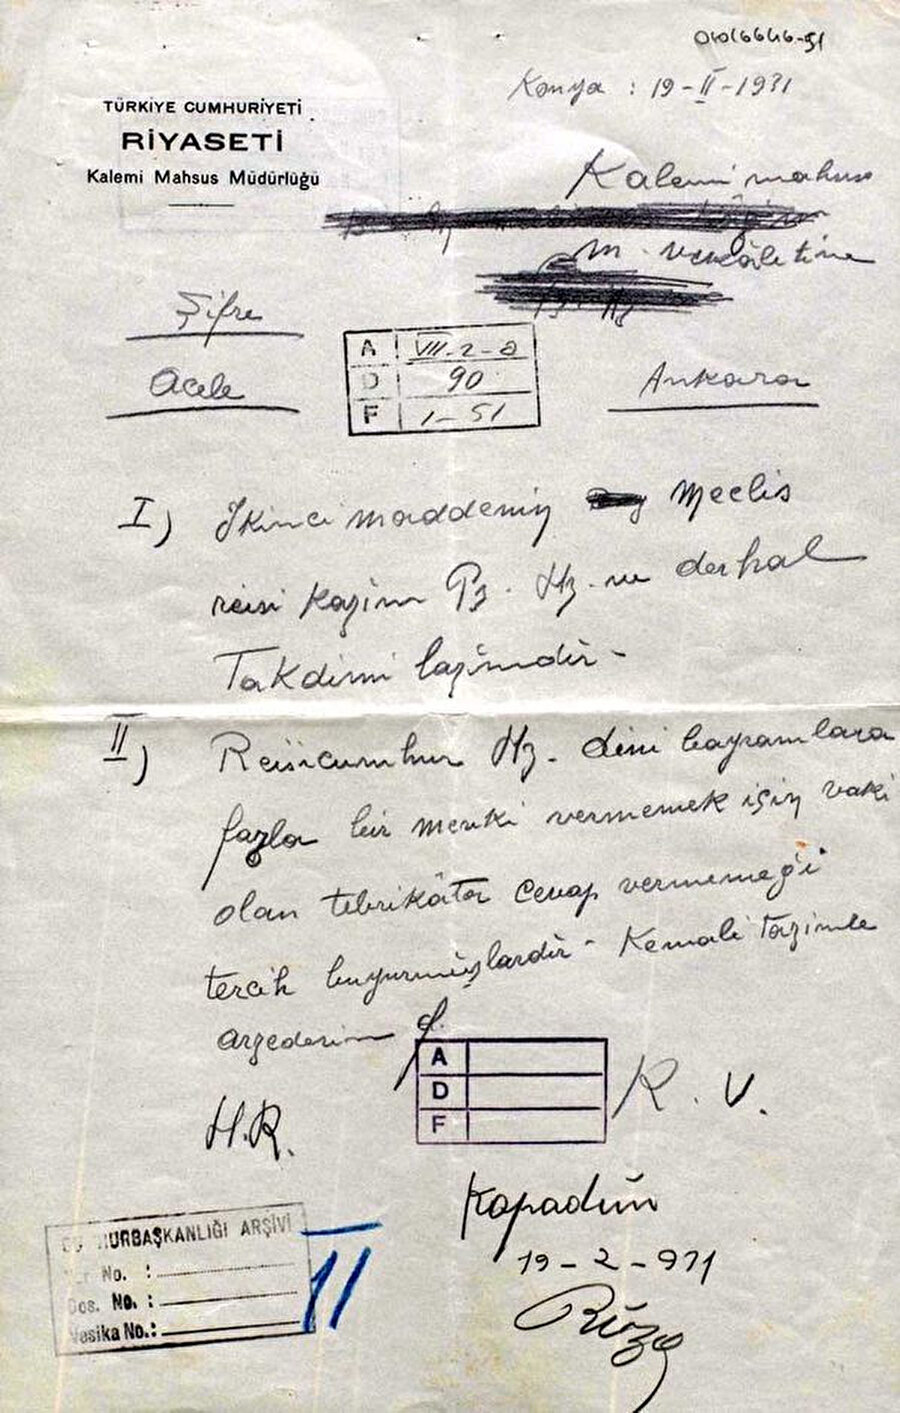 Hasan Rıza Soyak’ın Atatürk’ün dinî bayramlar ve bayram tebrikleri hakkındaki kararını Çankaya Köşkü’ne bildirdiği şifreli telgraf (Cumhurbaşkanlığı Arşivi, 04016646-51).